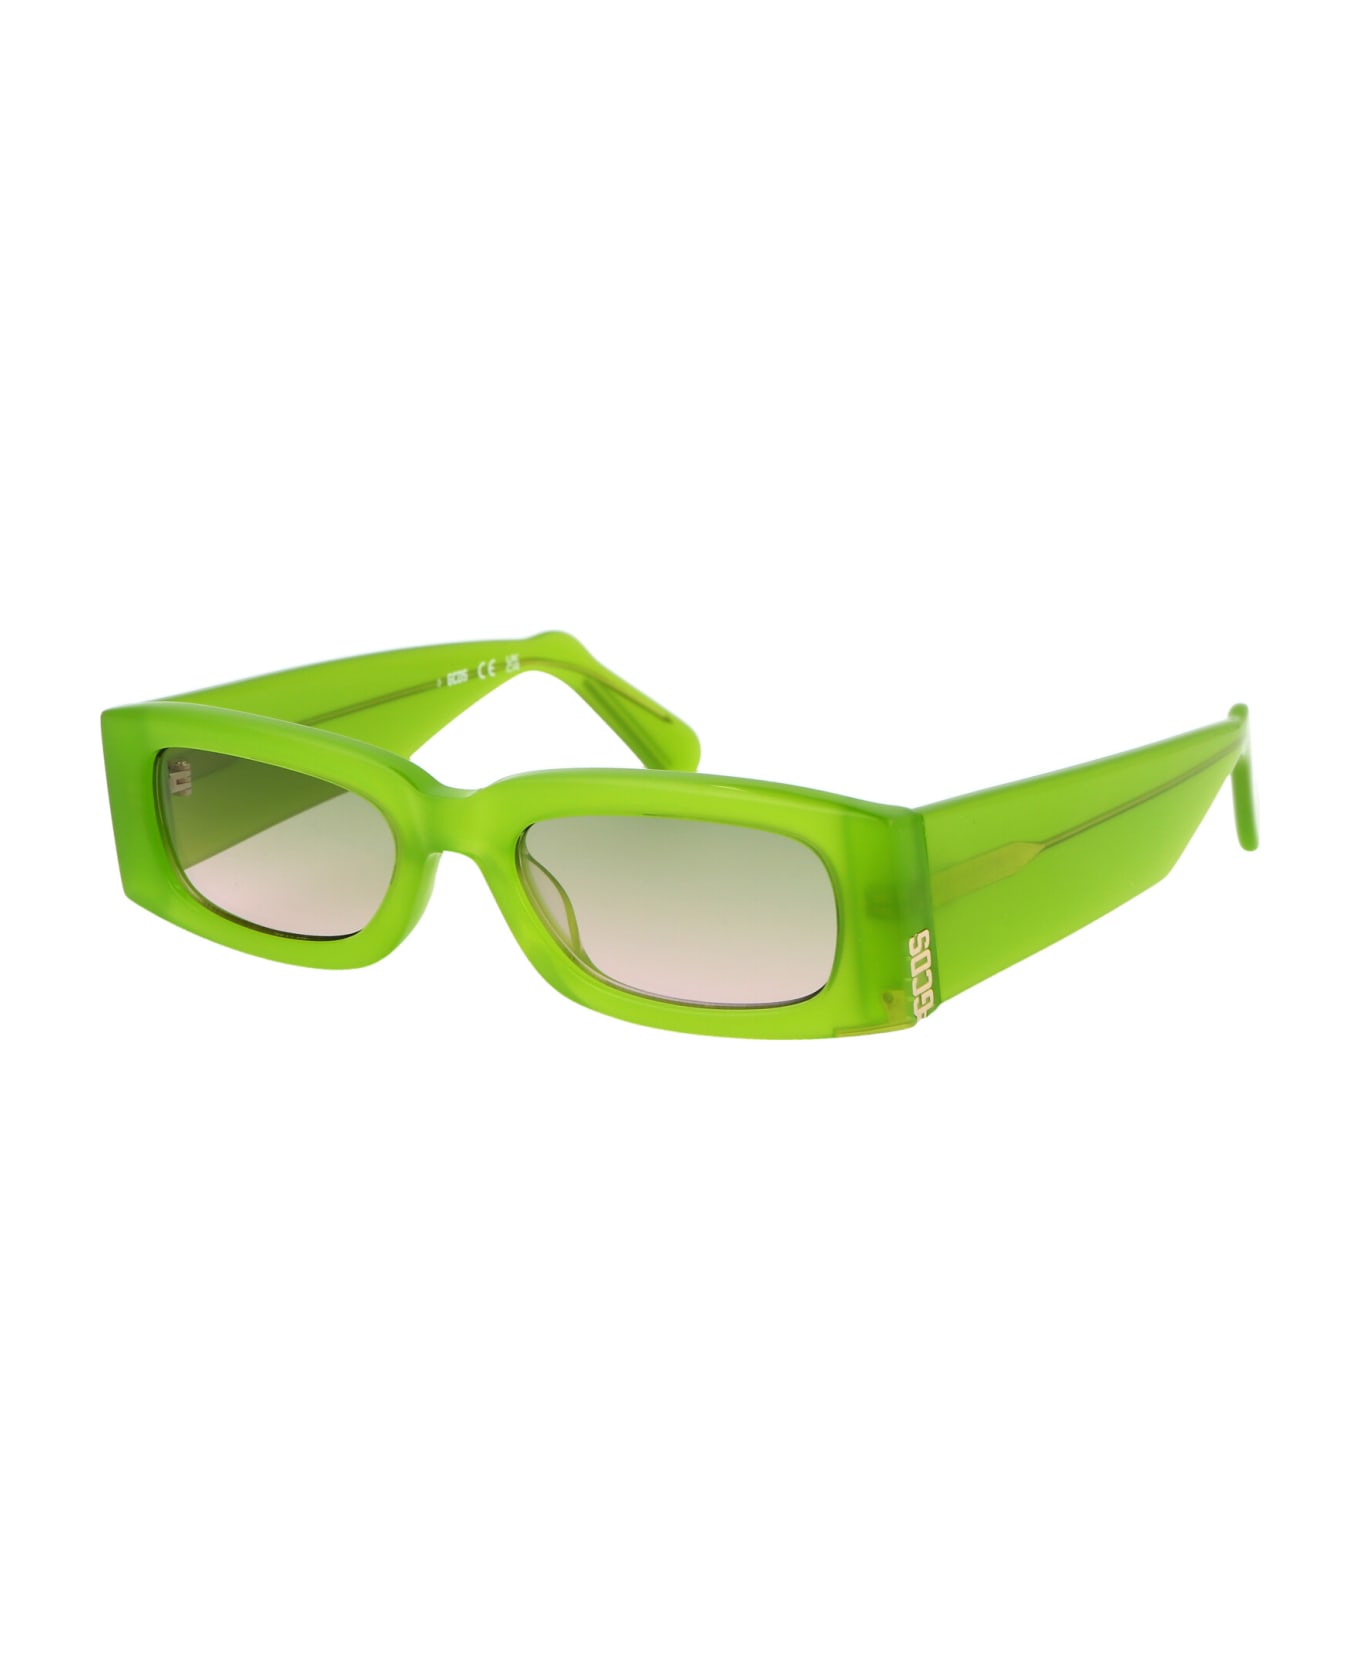 GCDS Gd0020 Sunglasses - 93P Verde Chiaro Luc/Verde Grad